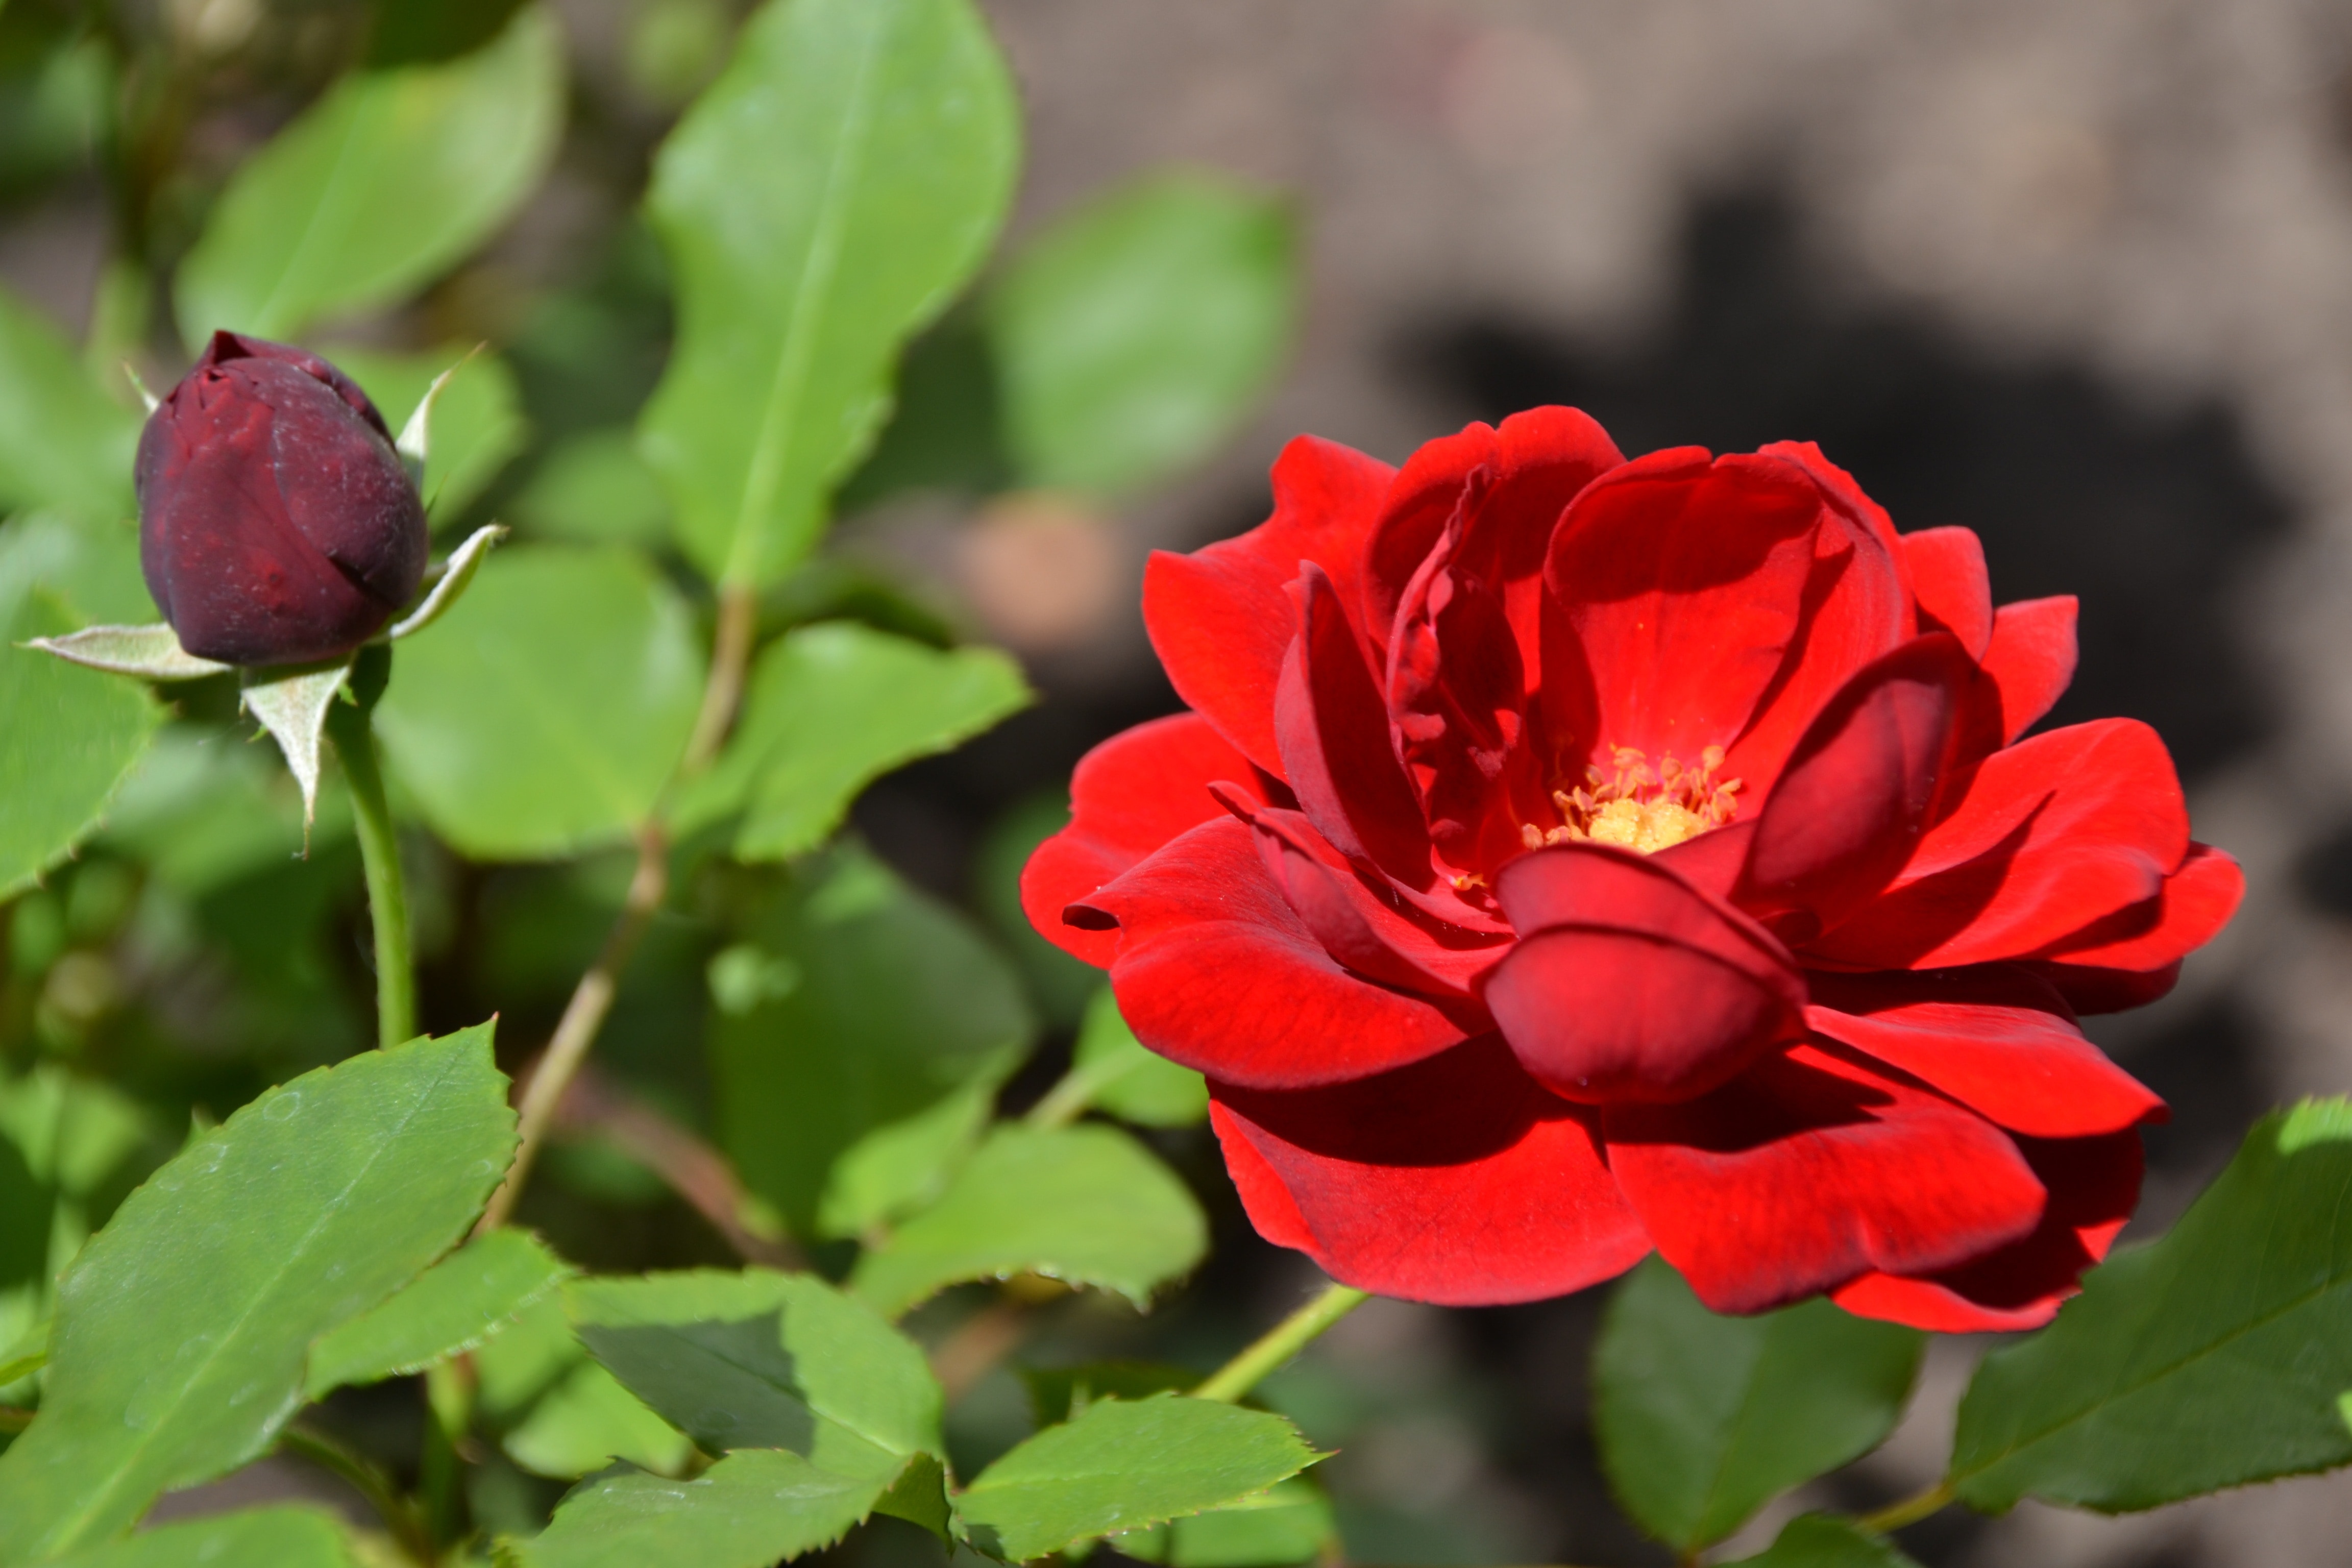 red rose flower in full bloom